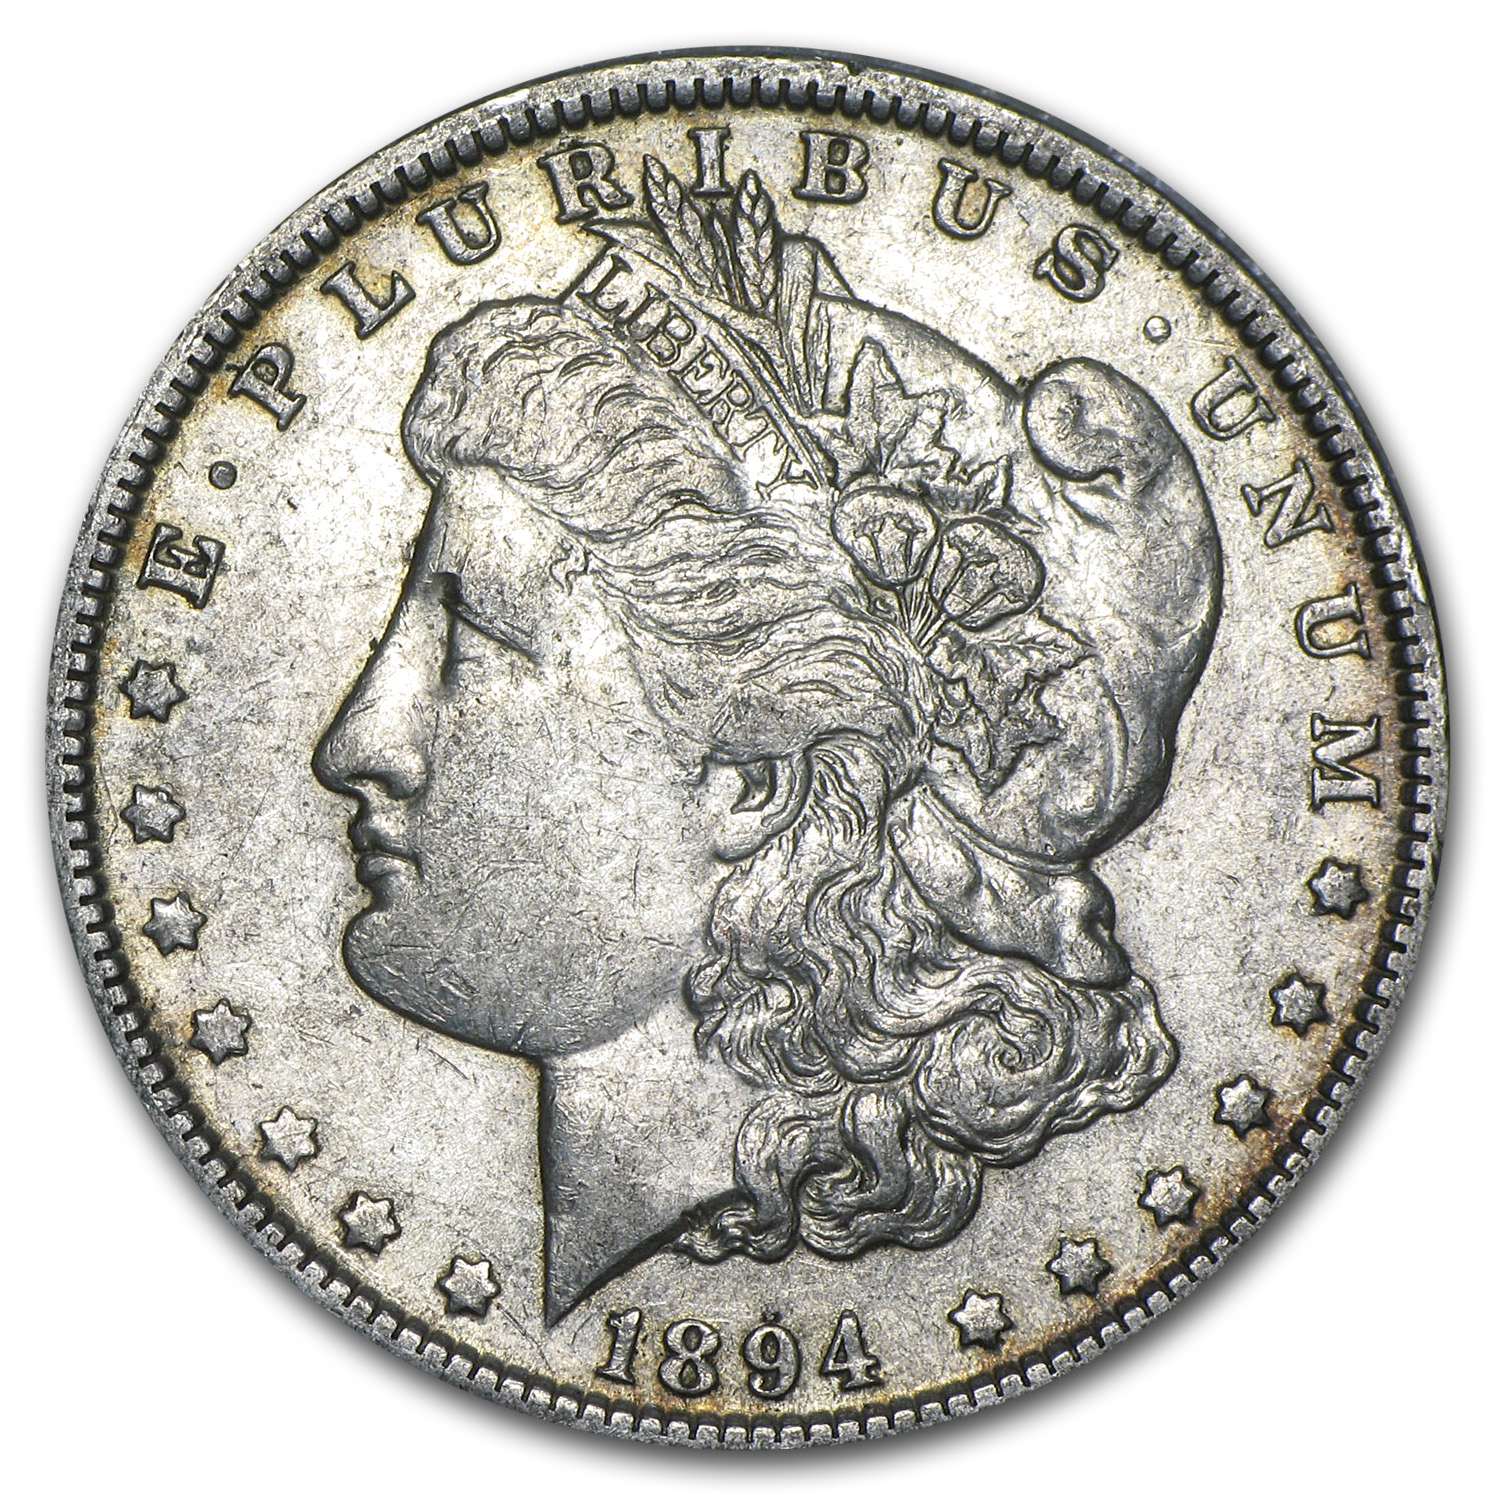 Buy 1894-O Morgan Dollar XF